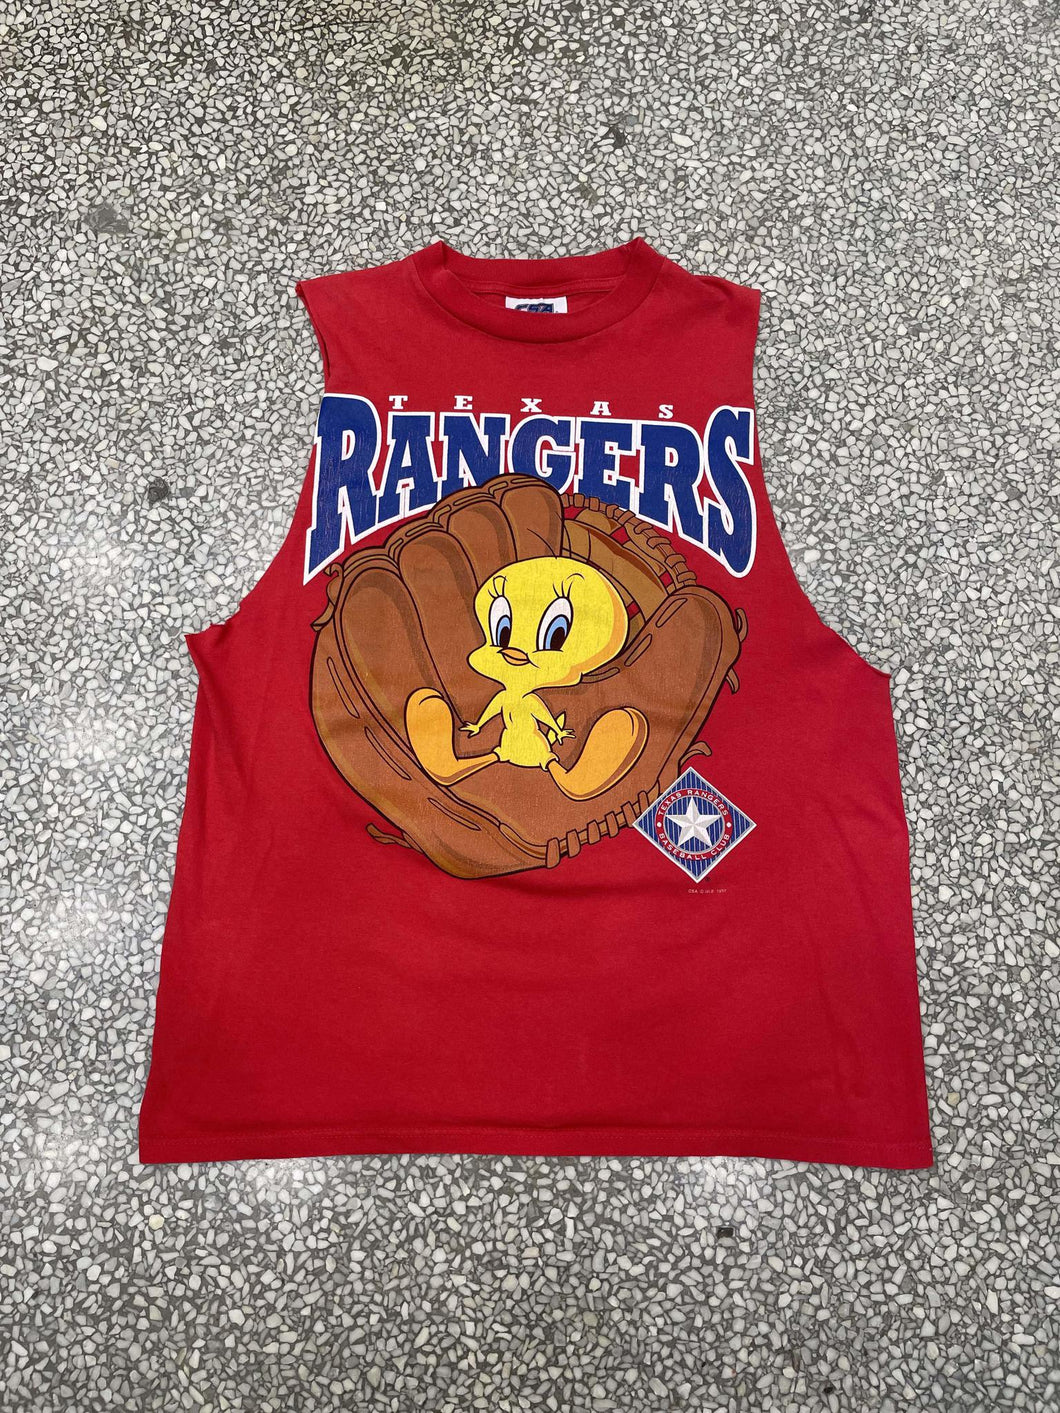 Texas Rangers Vintage 1997 Tweety Cutoff Red ABC Vintage 